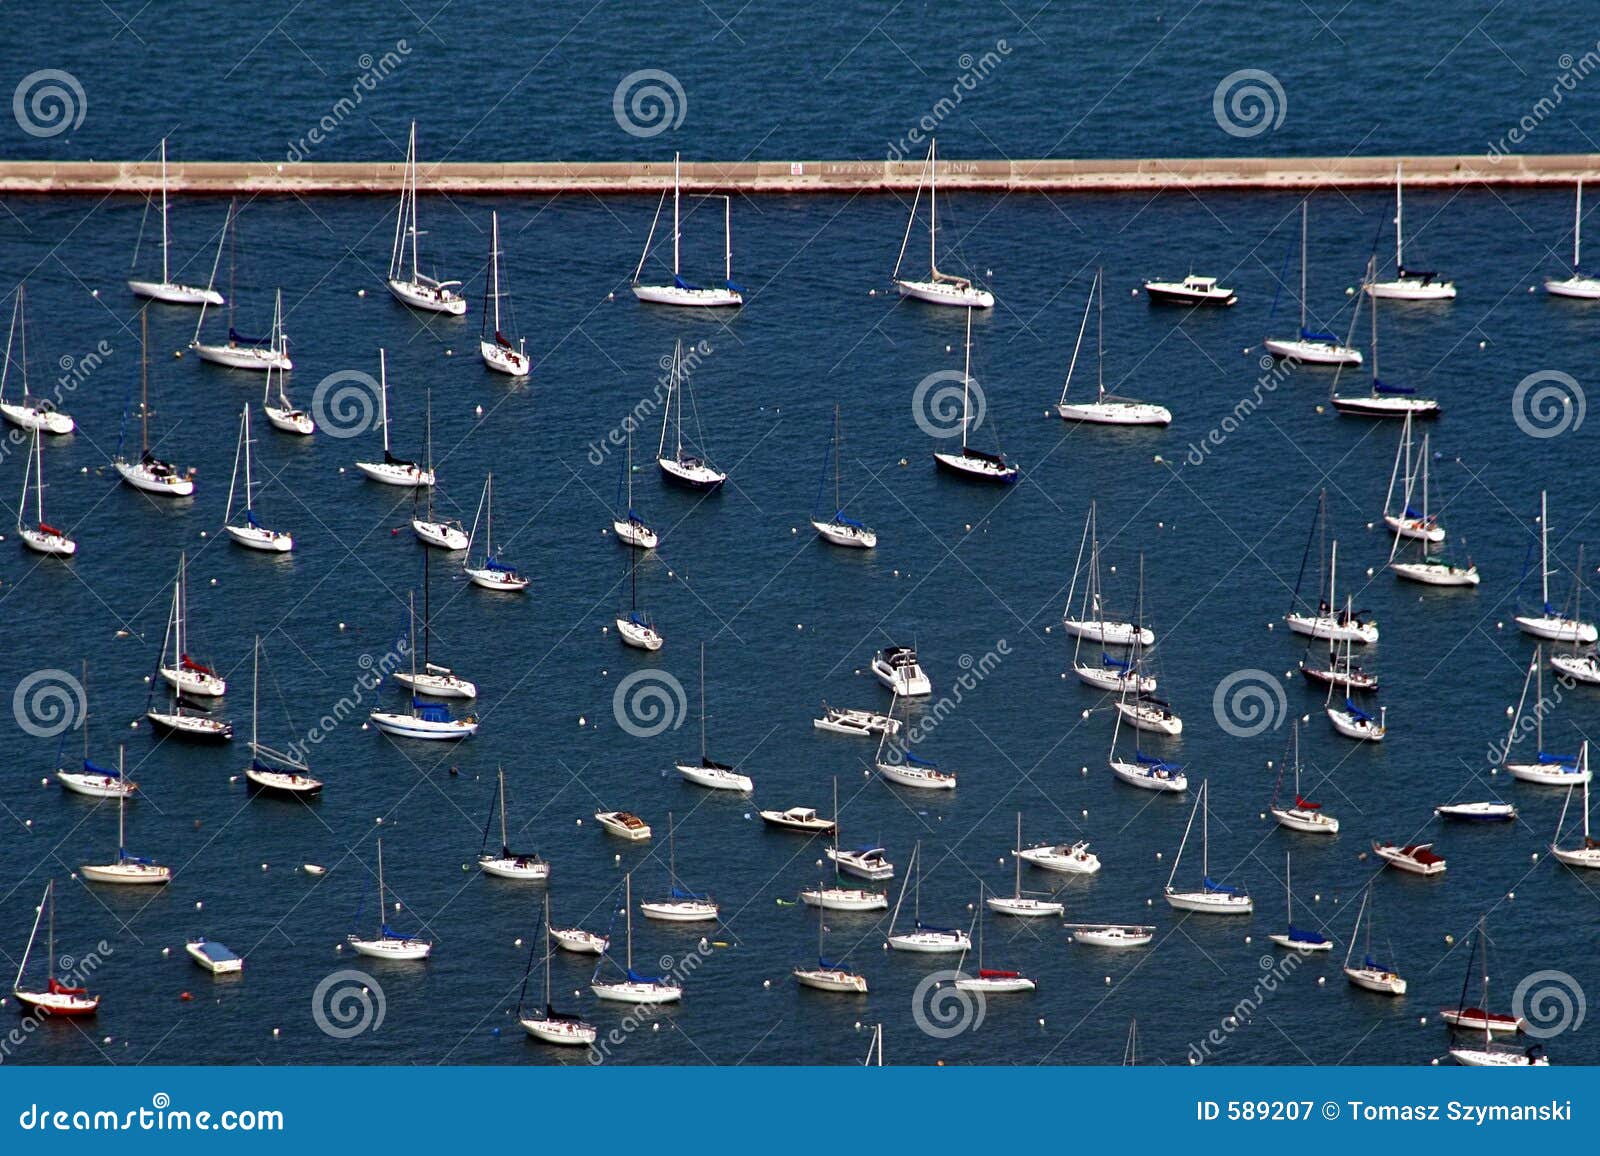 sailboats Ã¢â¬â aerial view